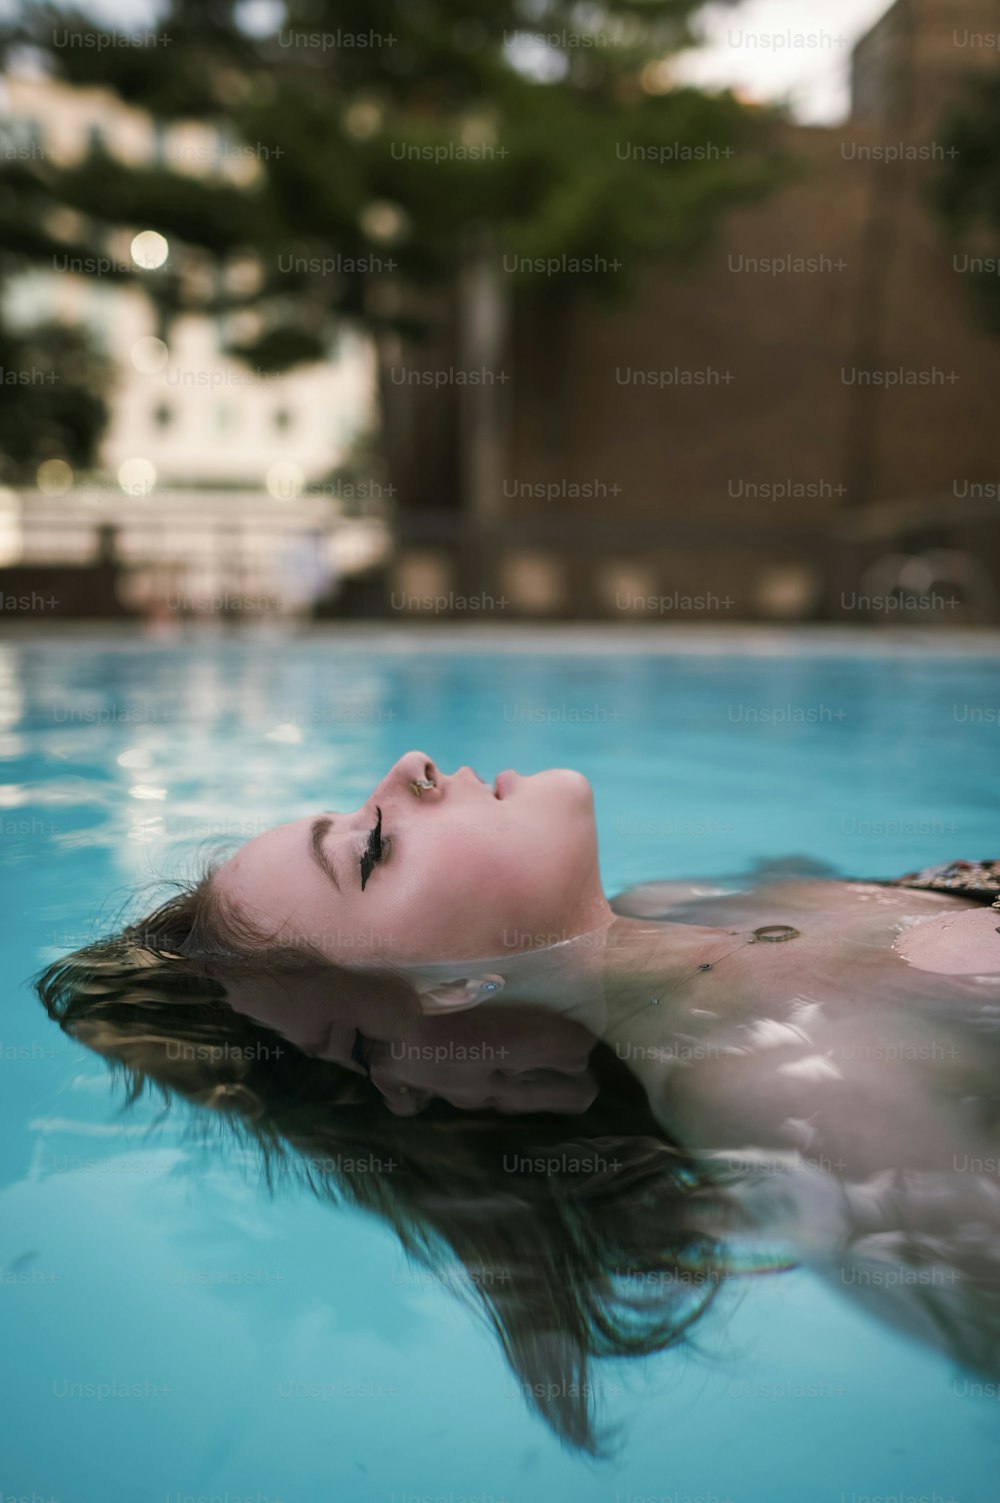 Una mujer flotando en un charco de agua